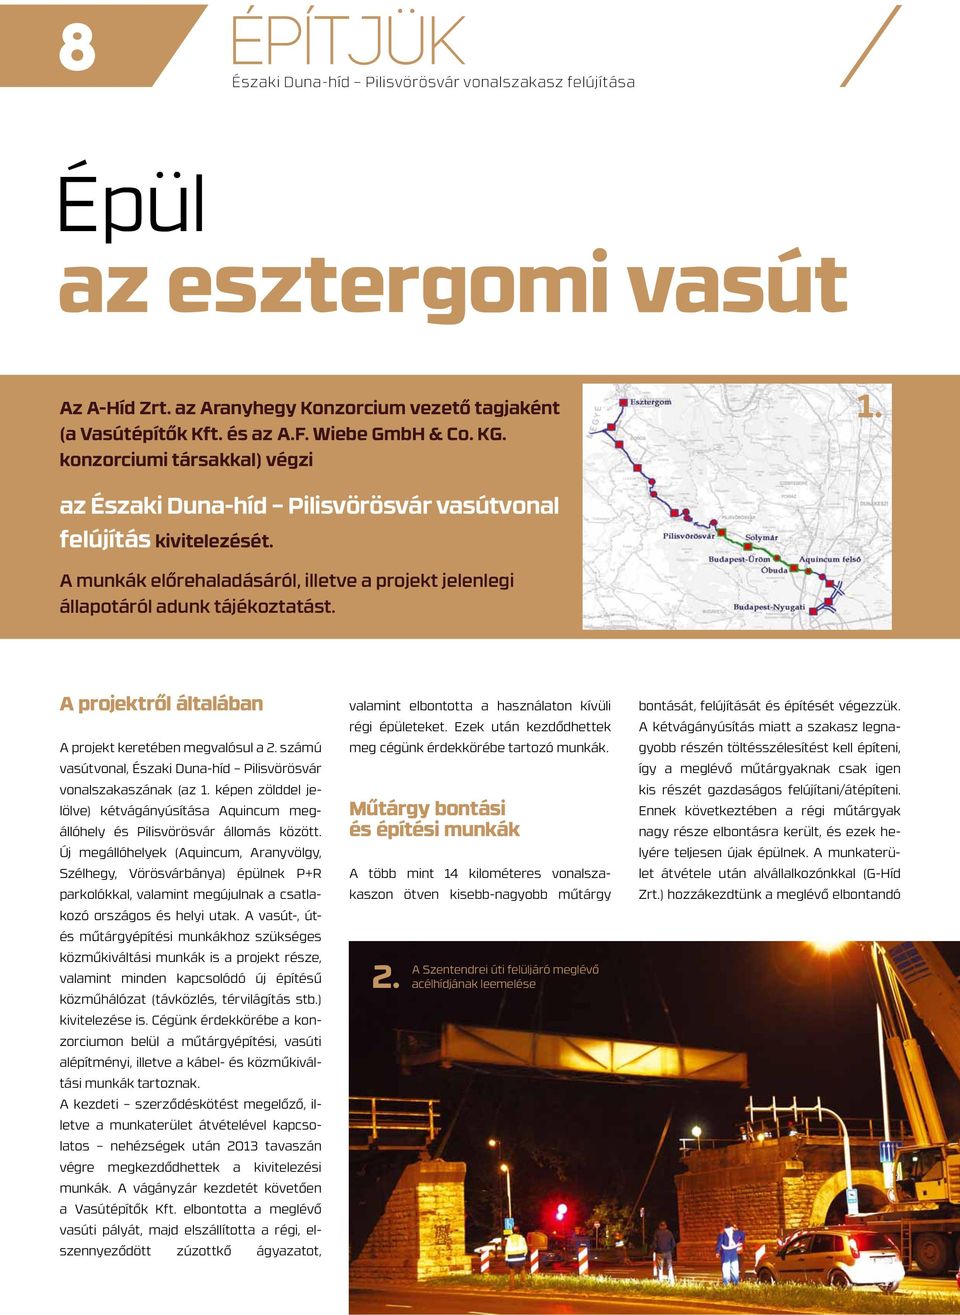 A projektről általában A projekt keretében megvalósul a 2. számú vasútvonal, Északi Duna-híd Pilisvörösvár vonalszakaszának (az 1.